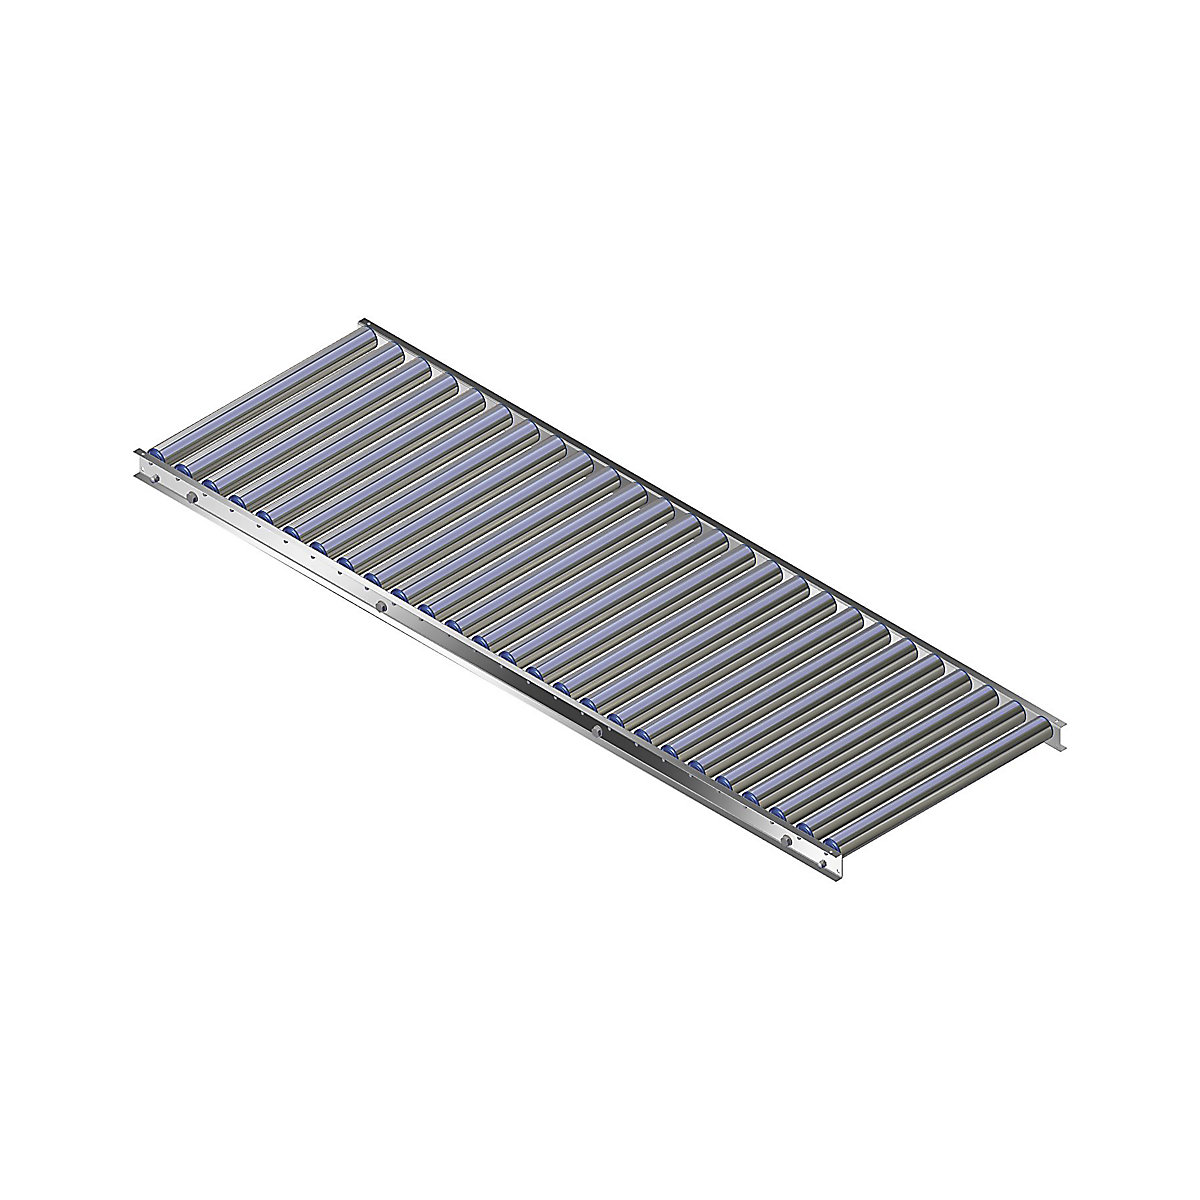 Könnyű görgős pálya, alumíniumkeret alumínium görgőkkel – Gura, pályaszélesség 600 mm, tengelytávolság 75 mm, hossz 2,0 m-8